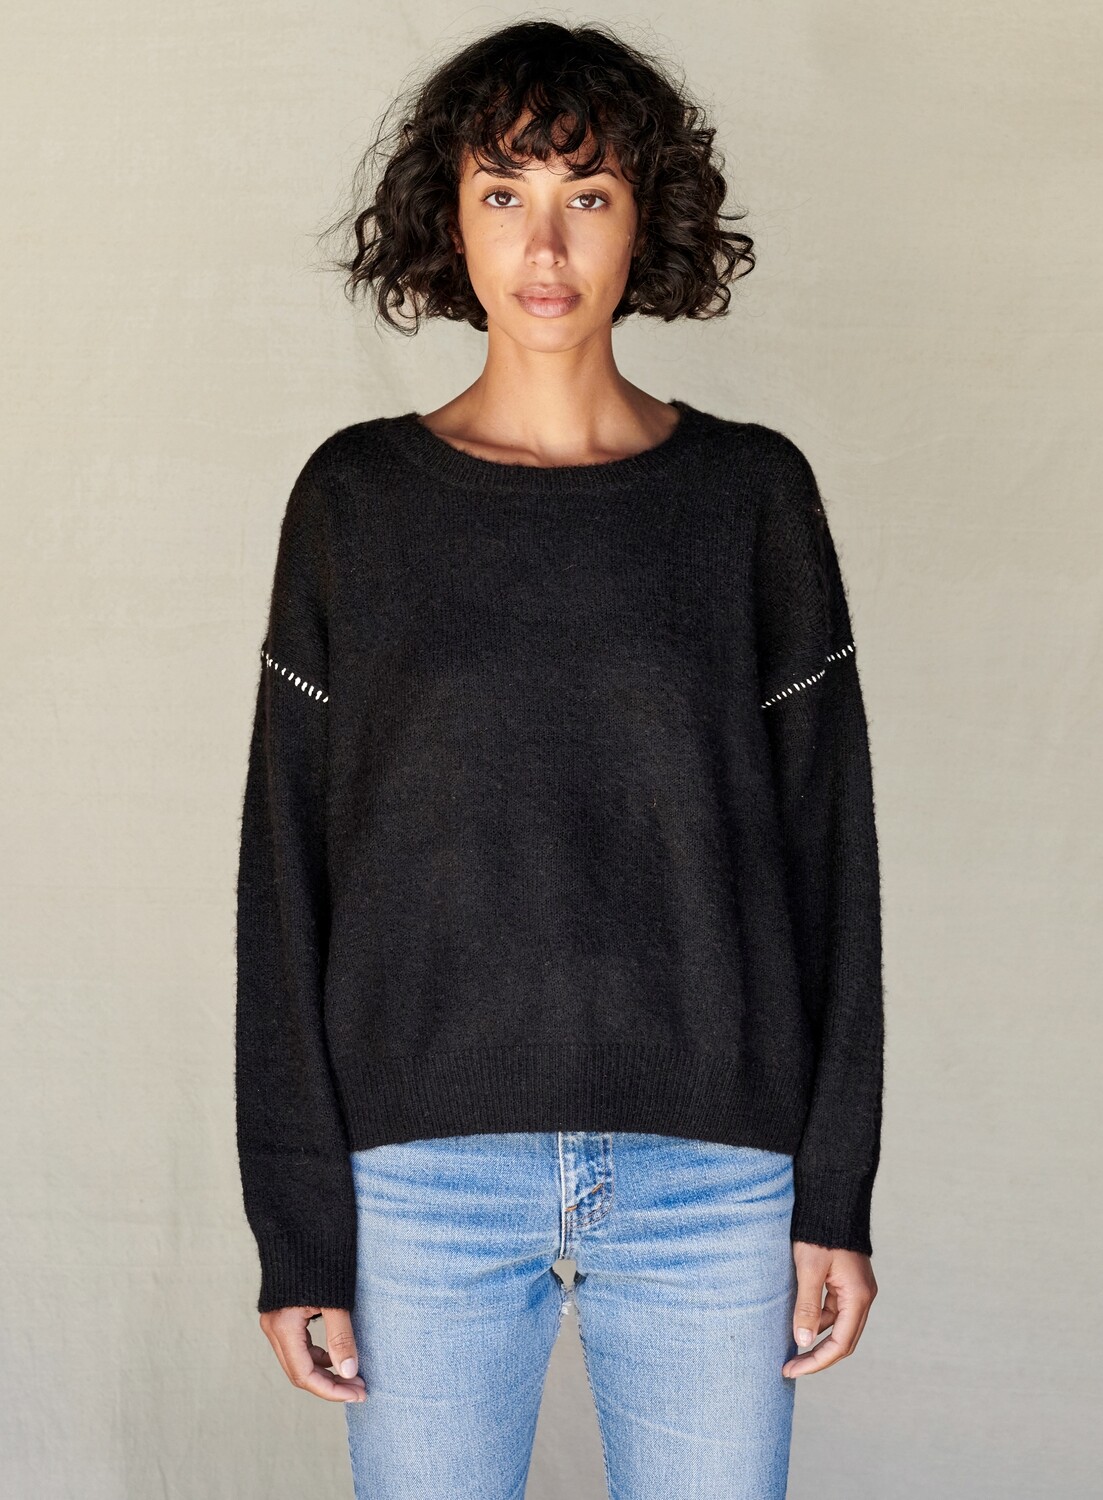 Sundry, Oversized Sweater, Black/Eggshell